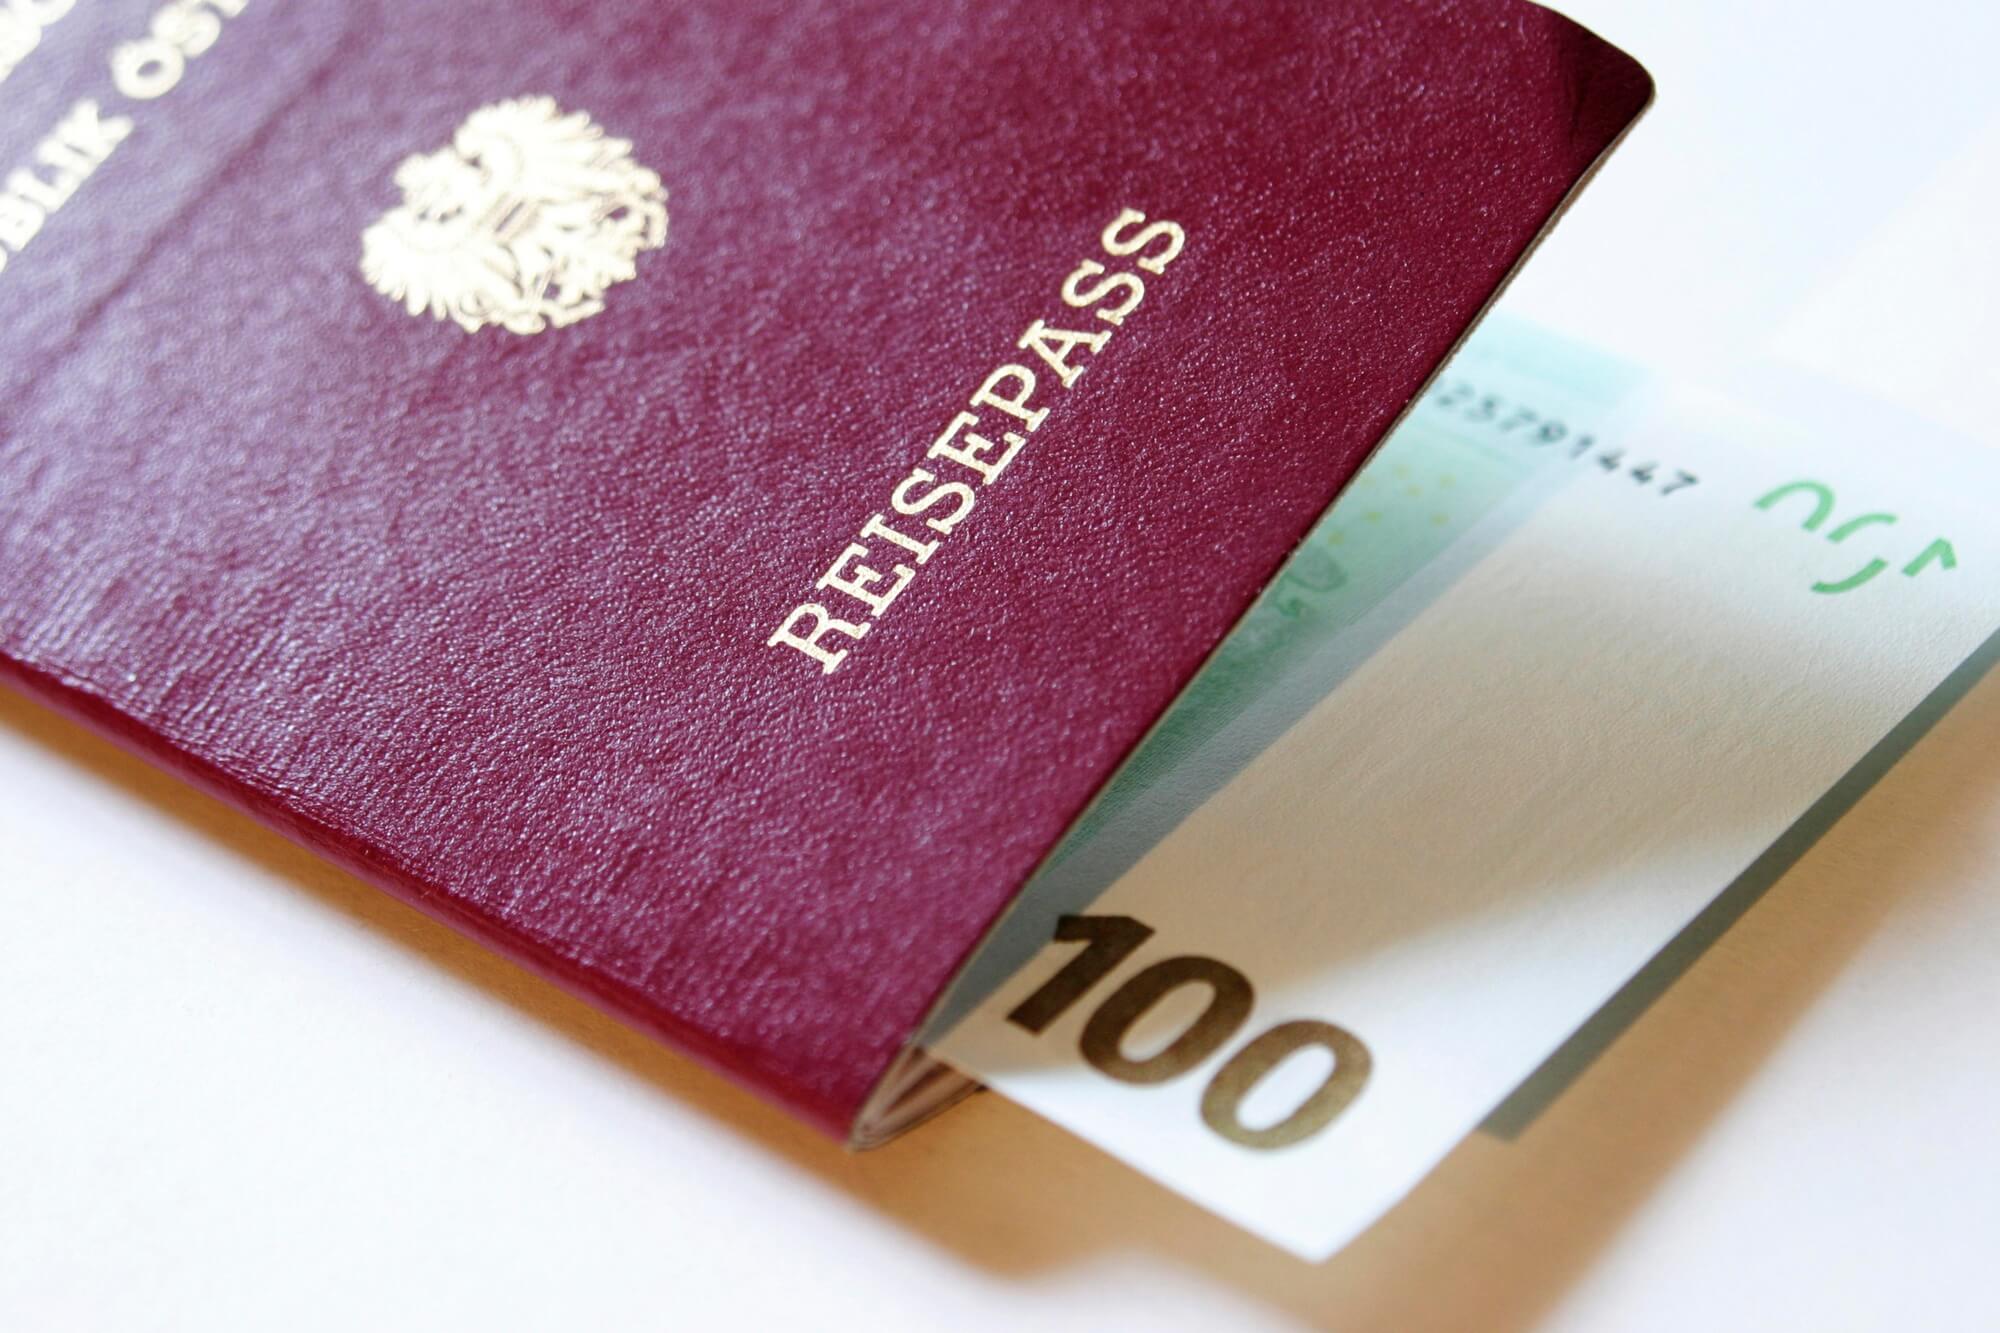 משרד עו"ד טל אופיר - הוצאת דרכון גרמני ואוסטרי מבלי לצאת מהבית